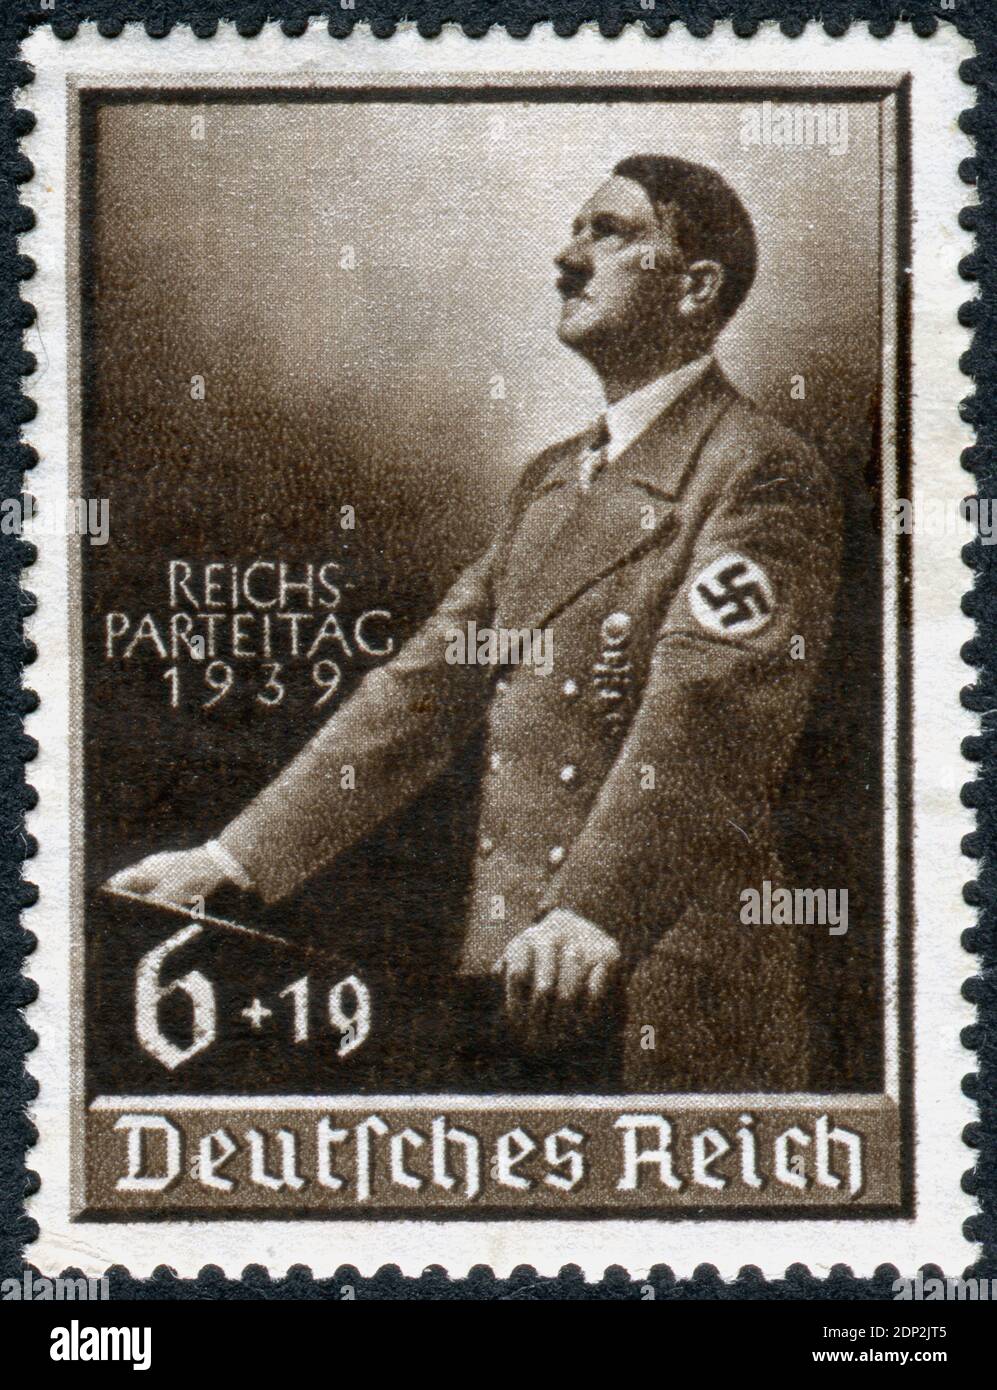 ALLEMAGNE - VERS 1939: Timbre imprimé en Allemagne, montre Adolf Hitler pour le lectern et dédié à la fête du Parti nazi. Adolf Hitler - politicien allemand, dirigeant (Fuehrer) d'Allemagne et du Parti nazi, vers 1939 Banque D'Images